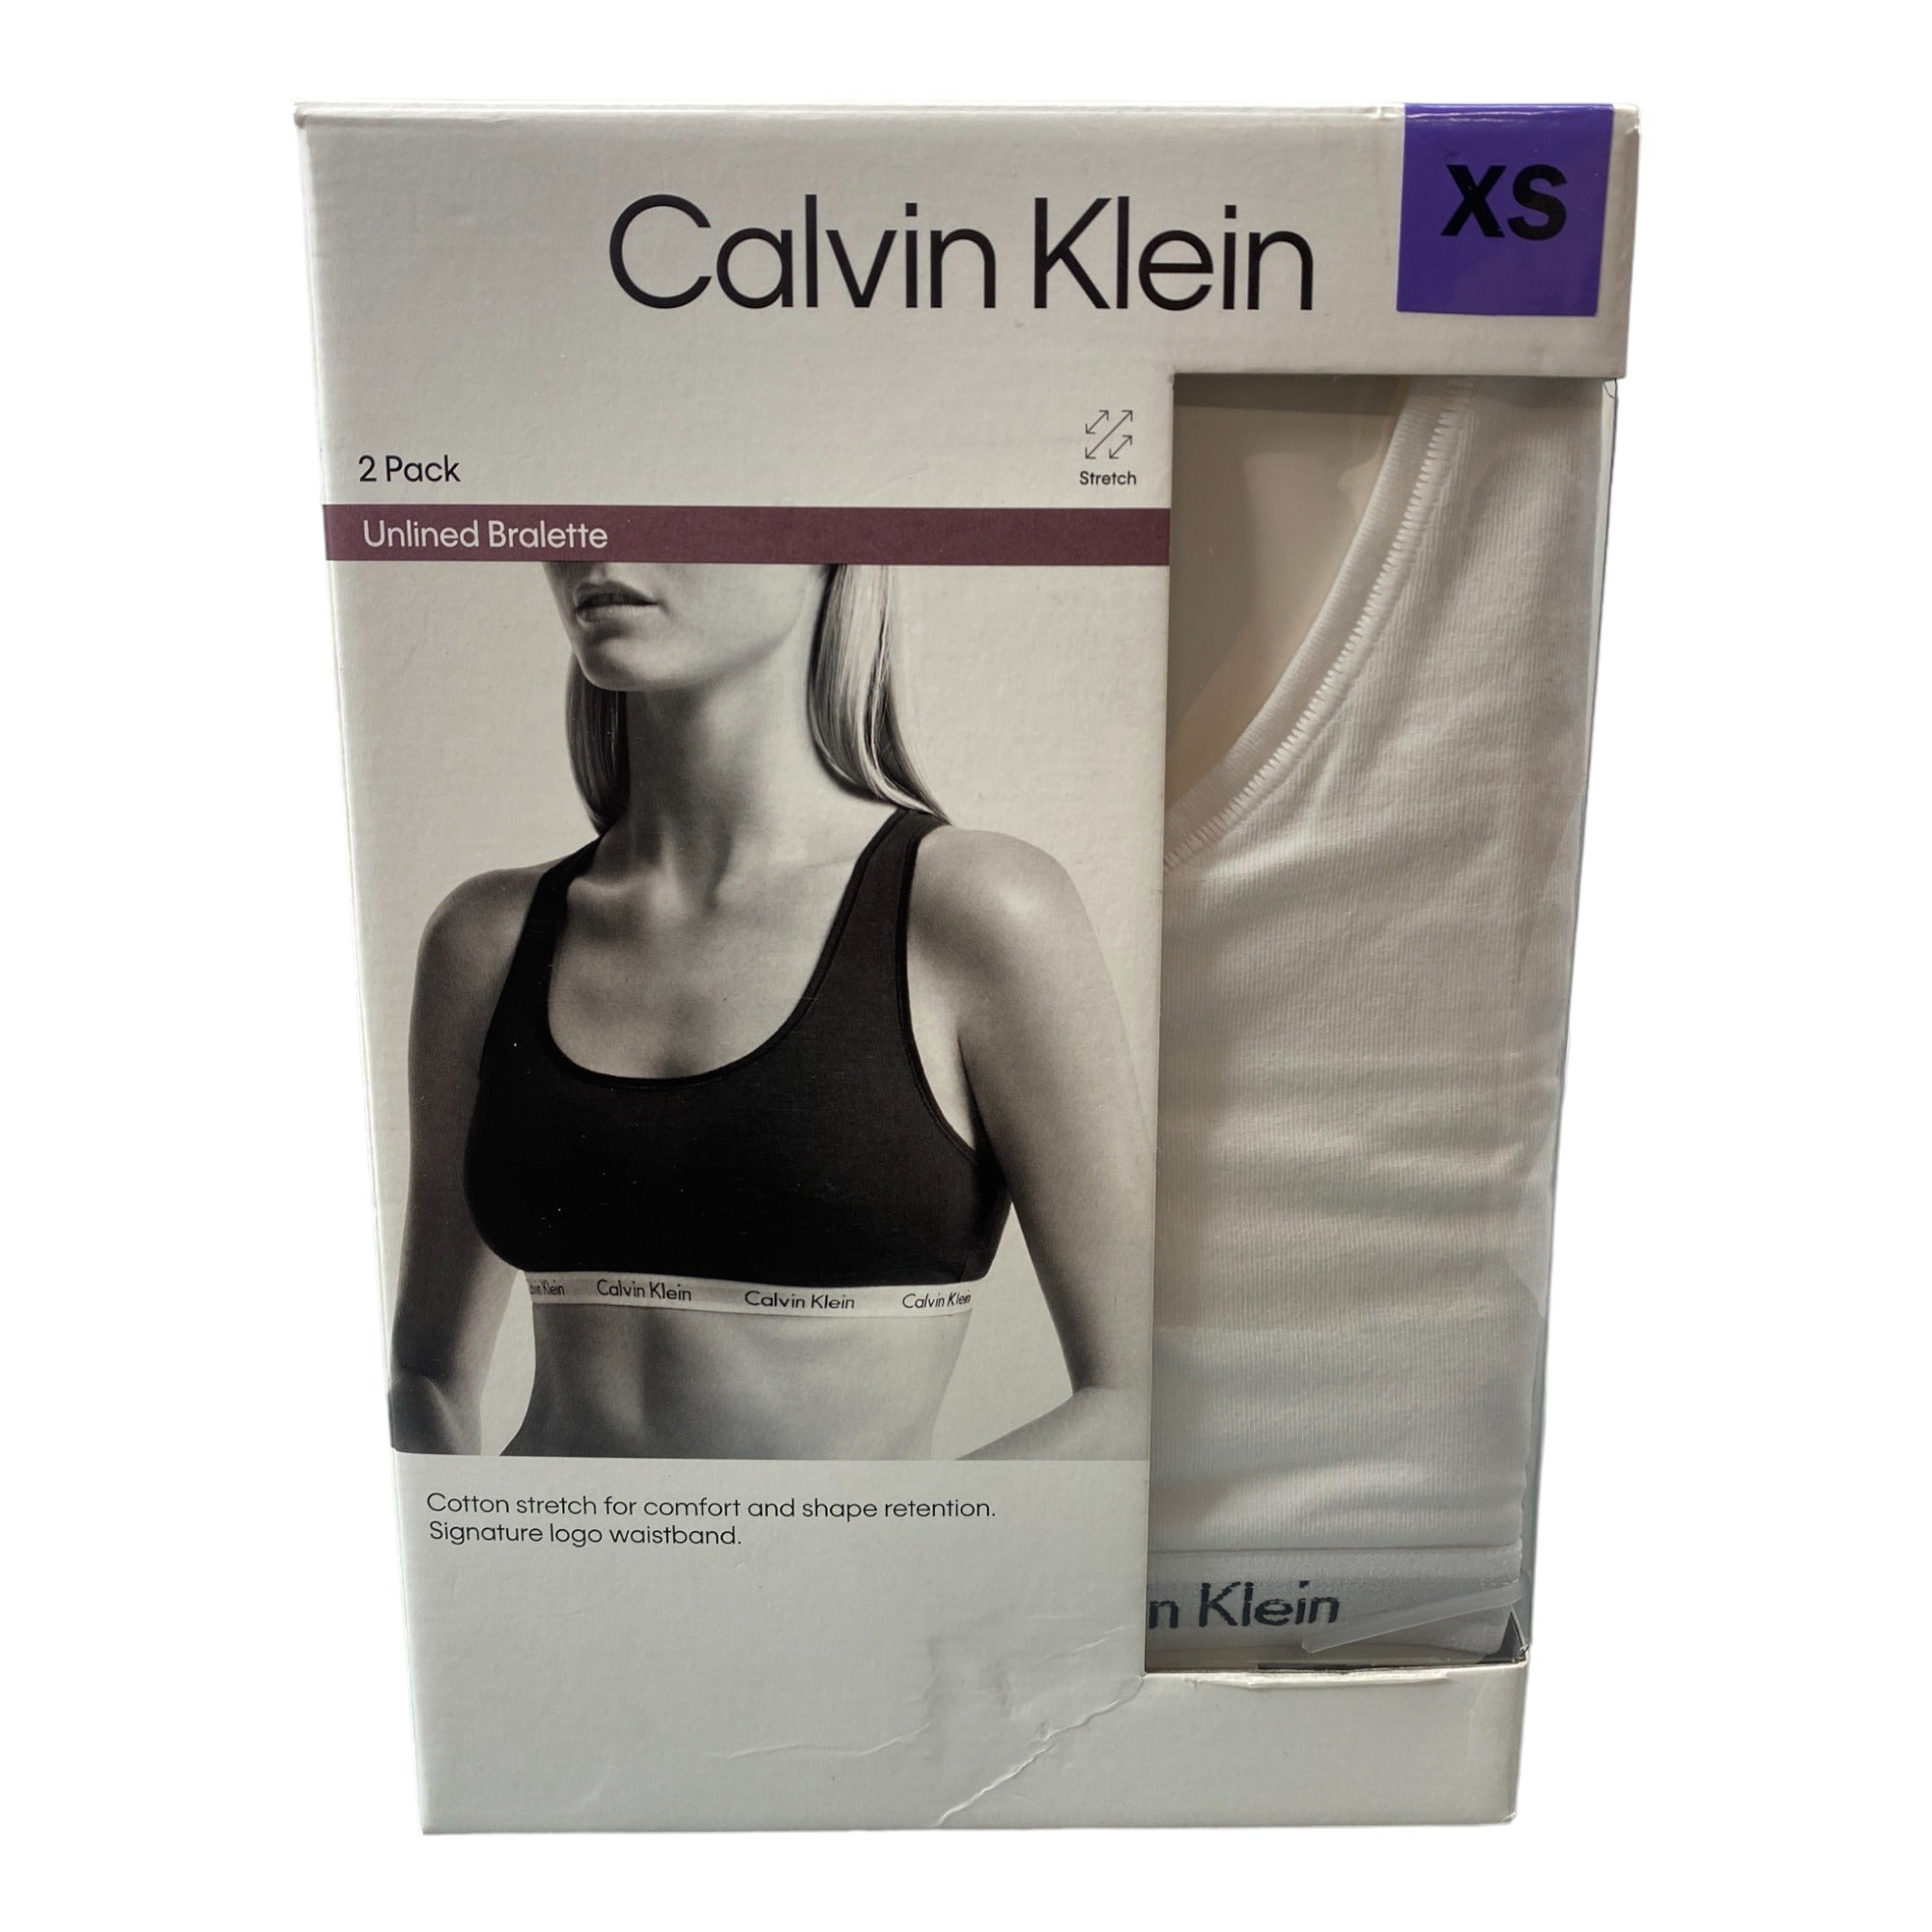 Bra Calvin Klein Unlined Bralette 2 Pack